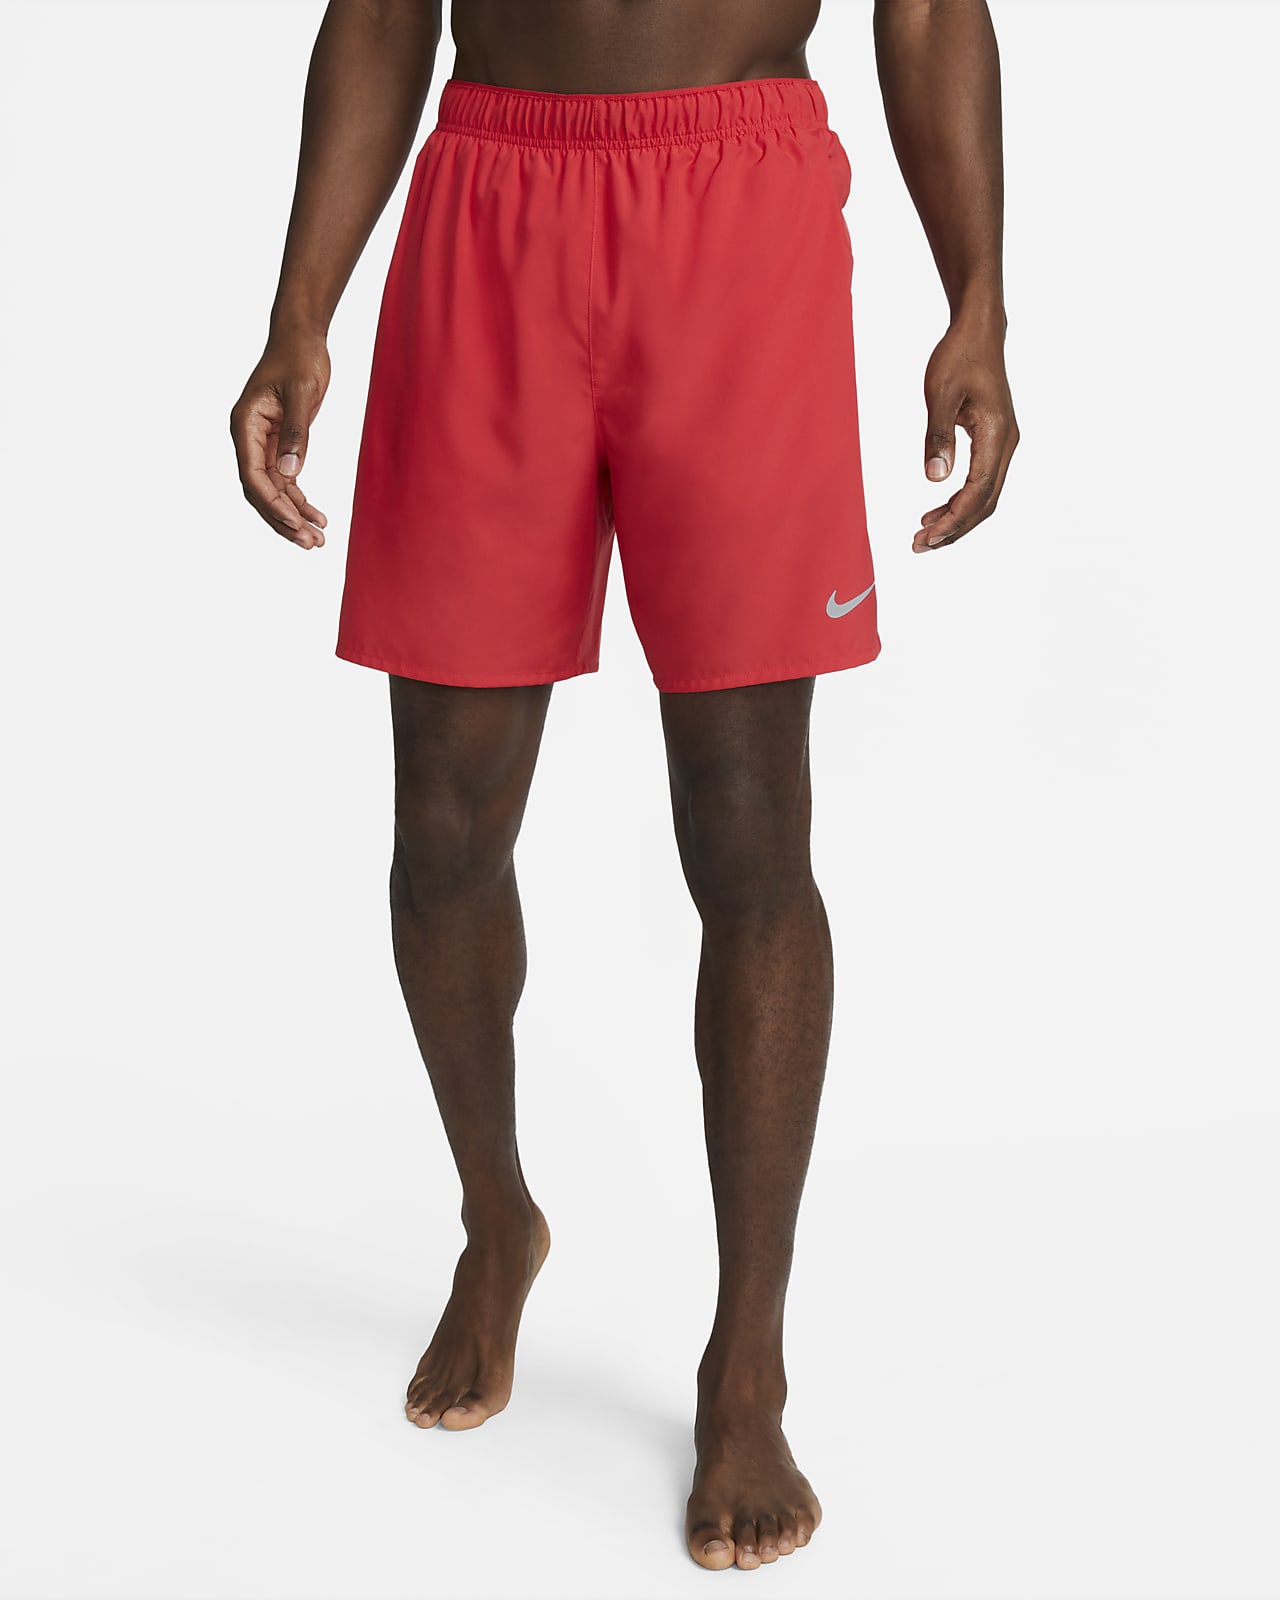 Nike Challenger Dri-FIT 18 cm-es, belső rövidnadrággal bélelt férfi futórövidnadrág